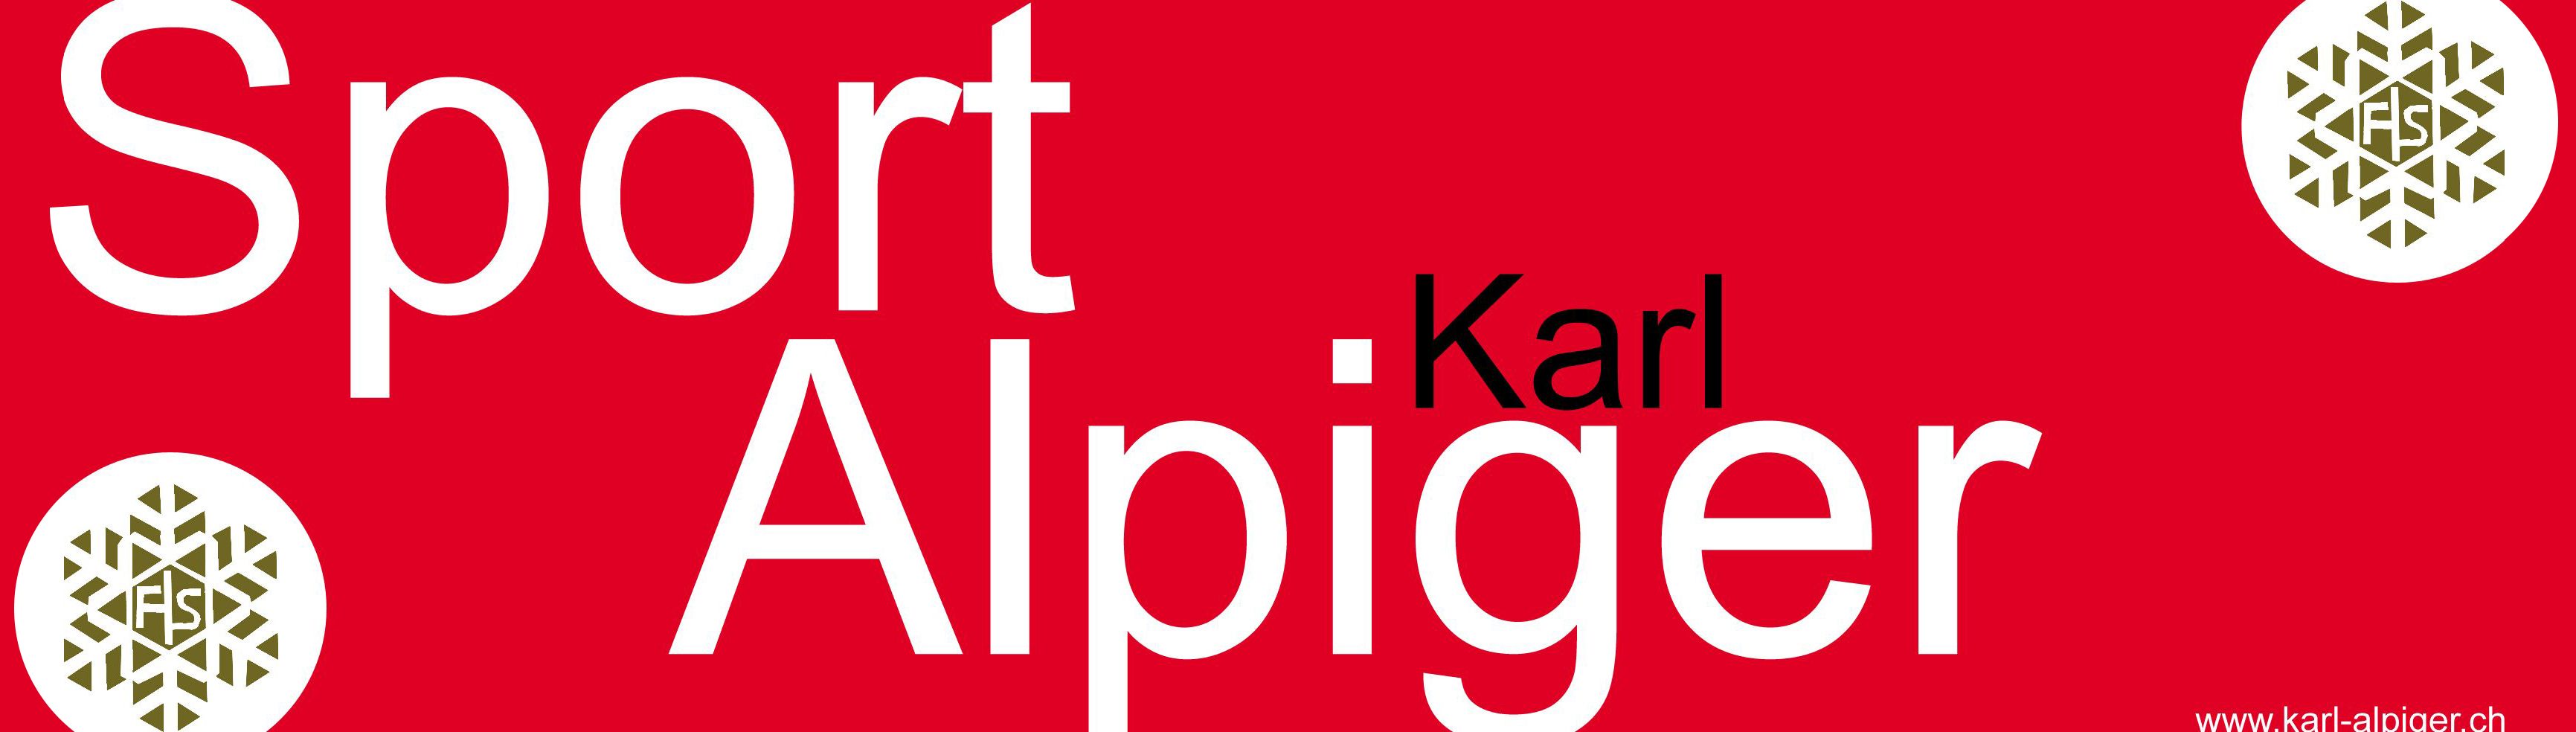 Karl Alpiger - SPORT CENTER WILDHAUS